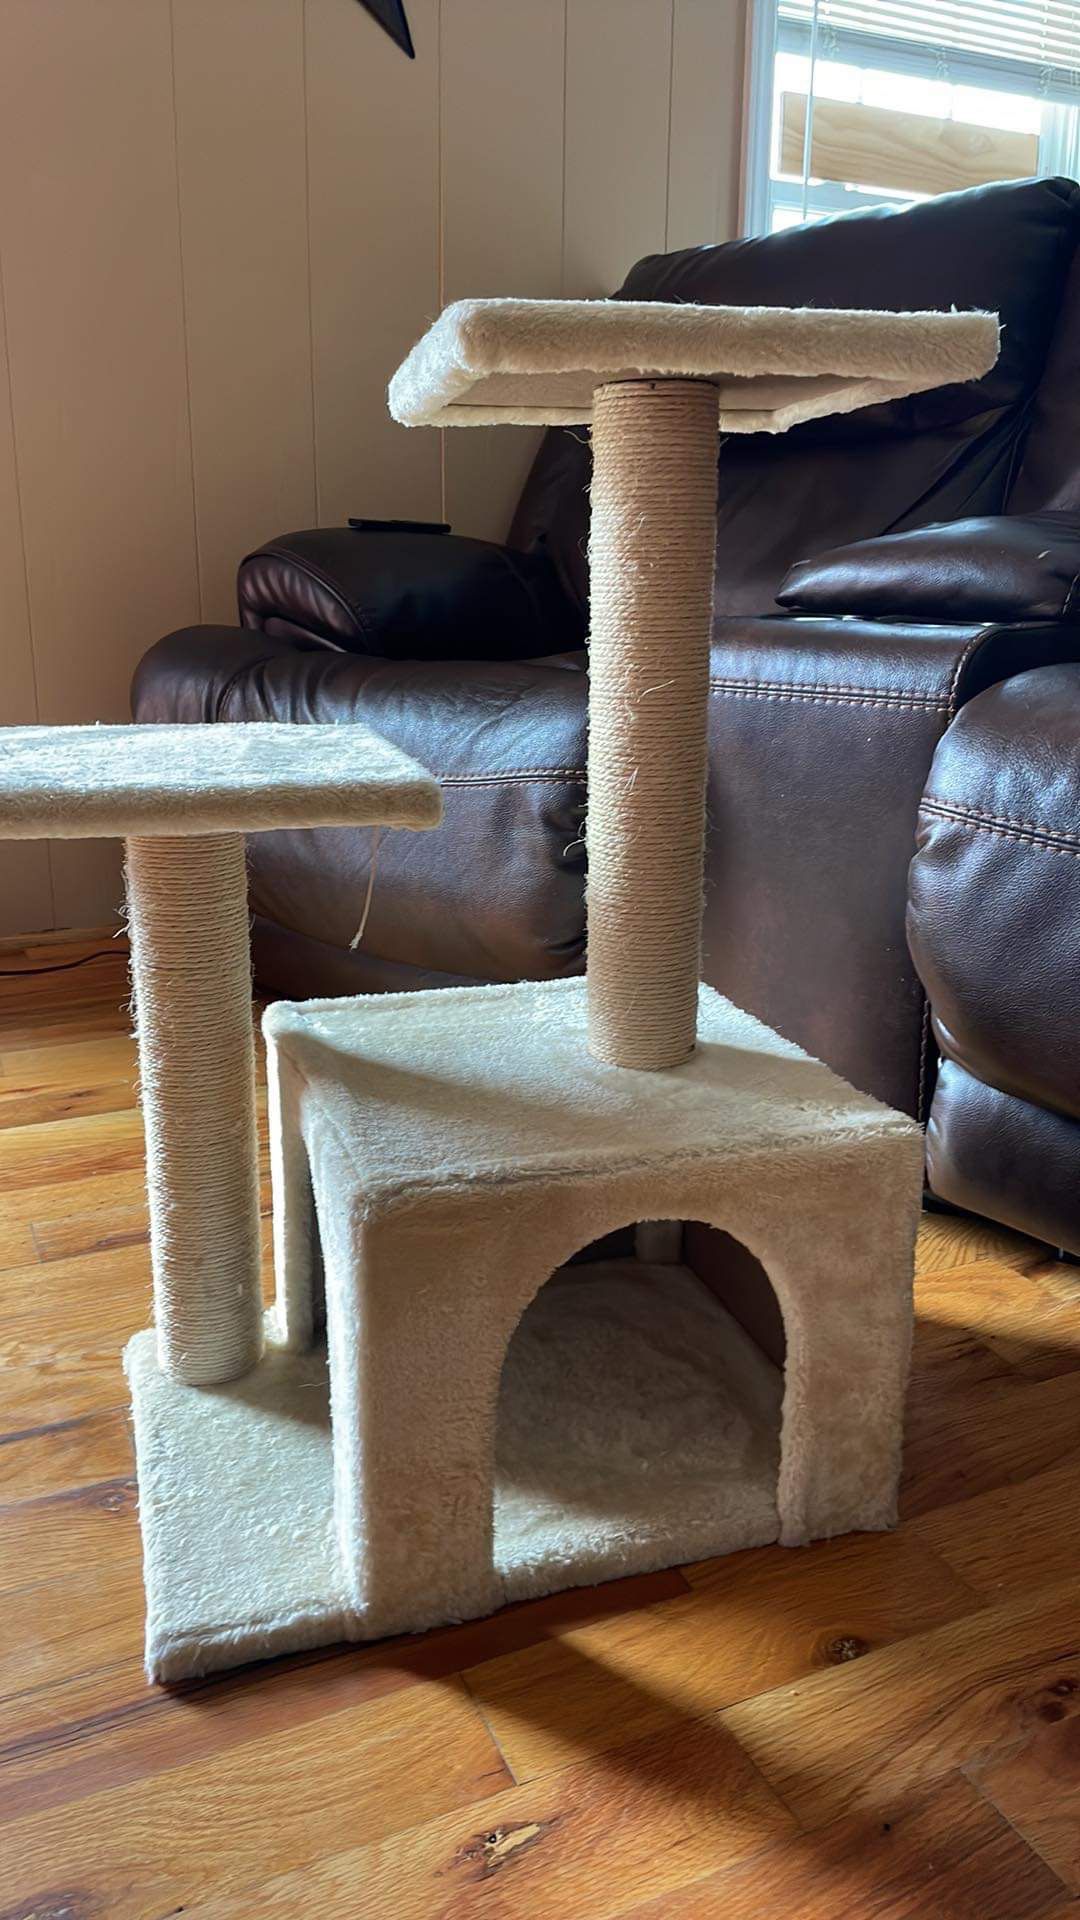 Cat Tower / Scratcher